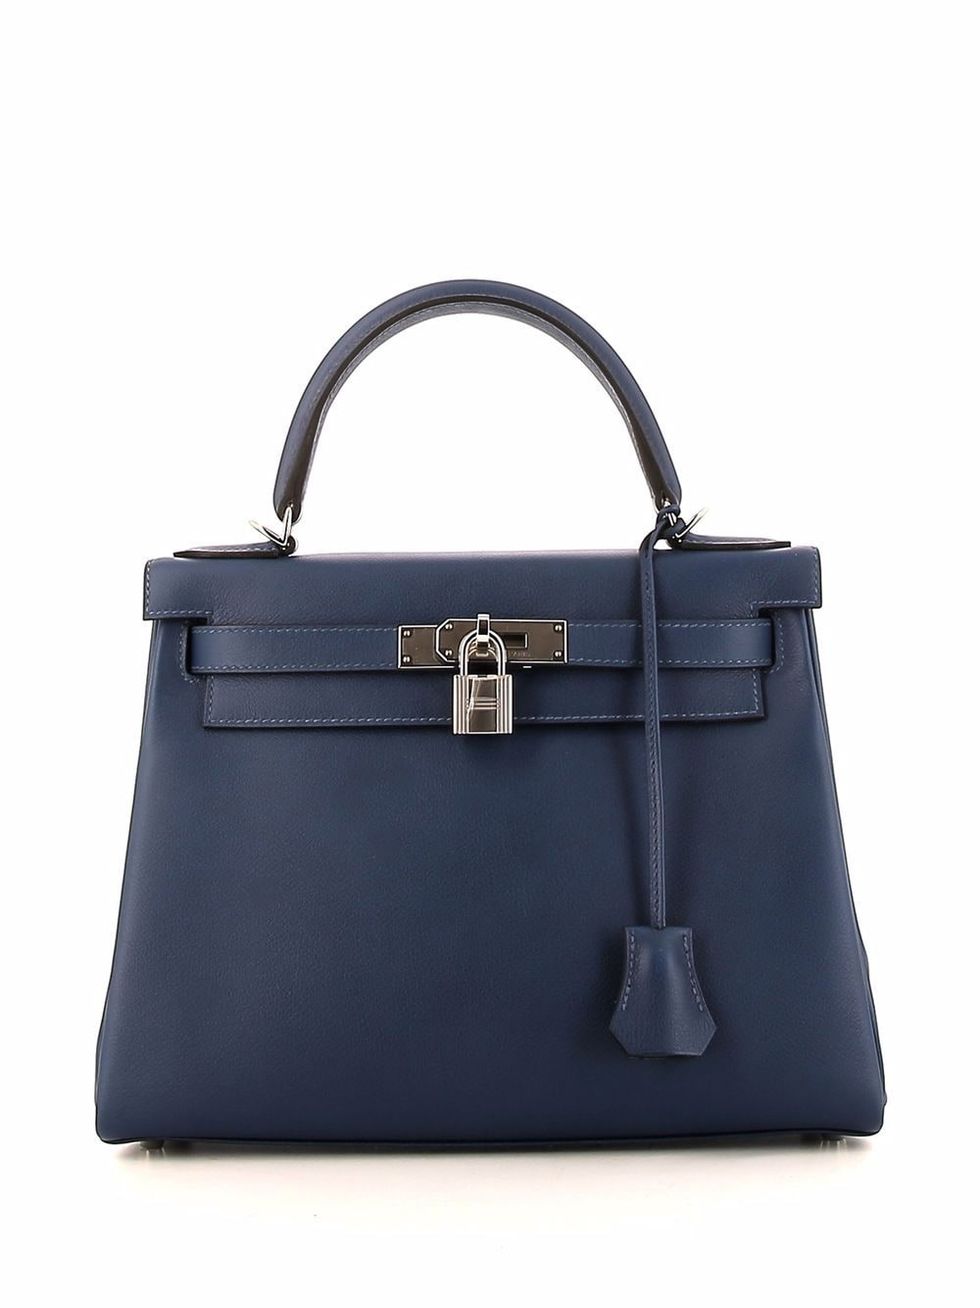 vintage designer bags > new designer handbags 💅🏼😌 new drop live on